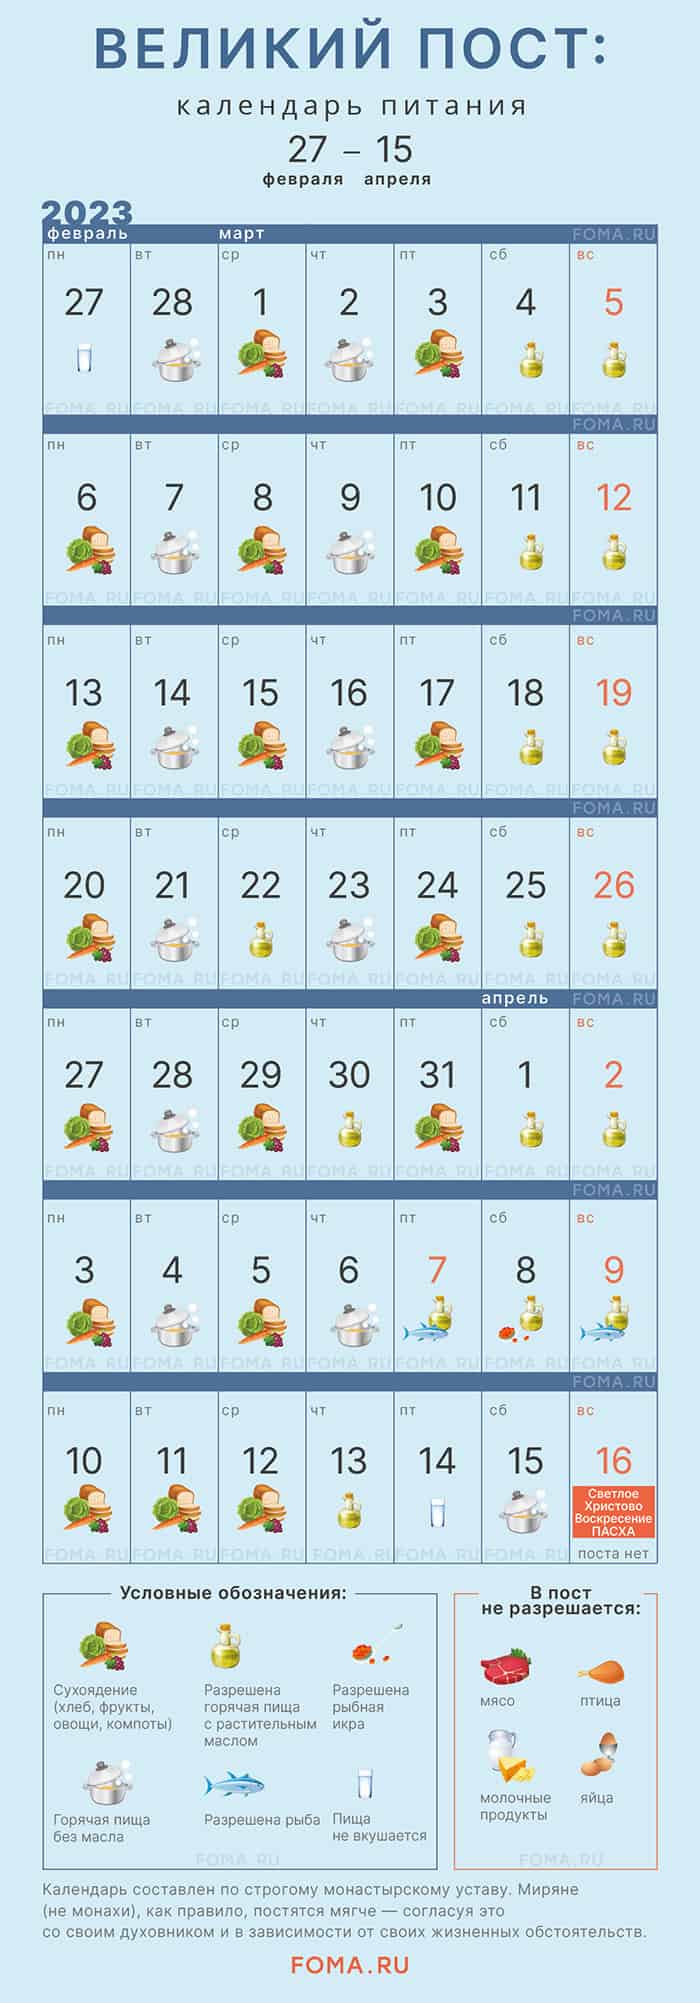 Великий пост: календарь питания по дням - Православный журнал «Фома»